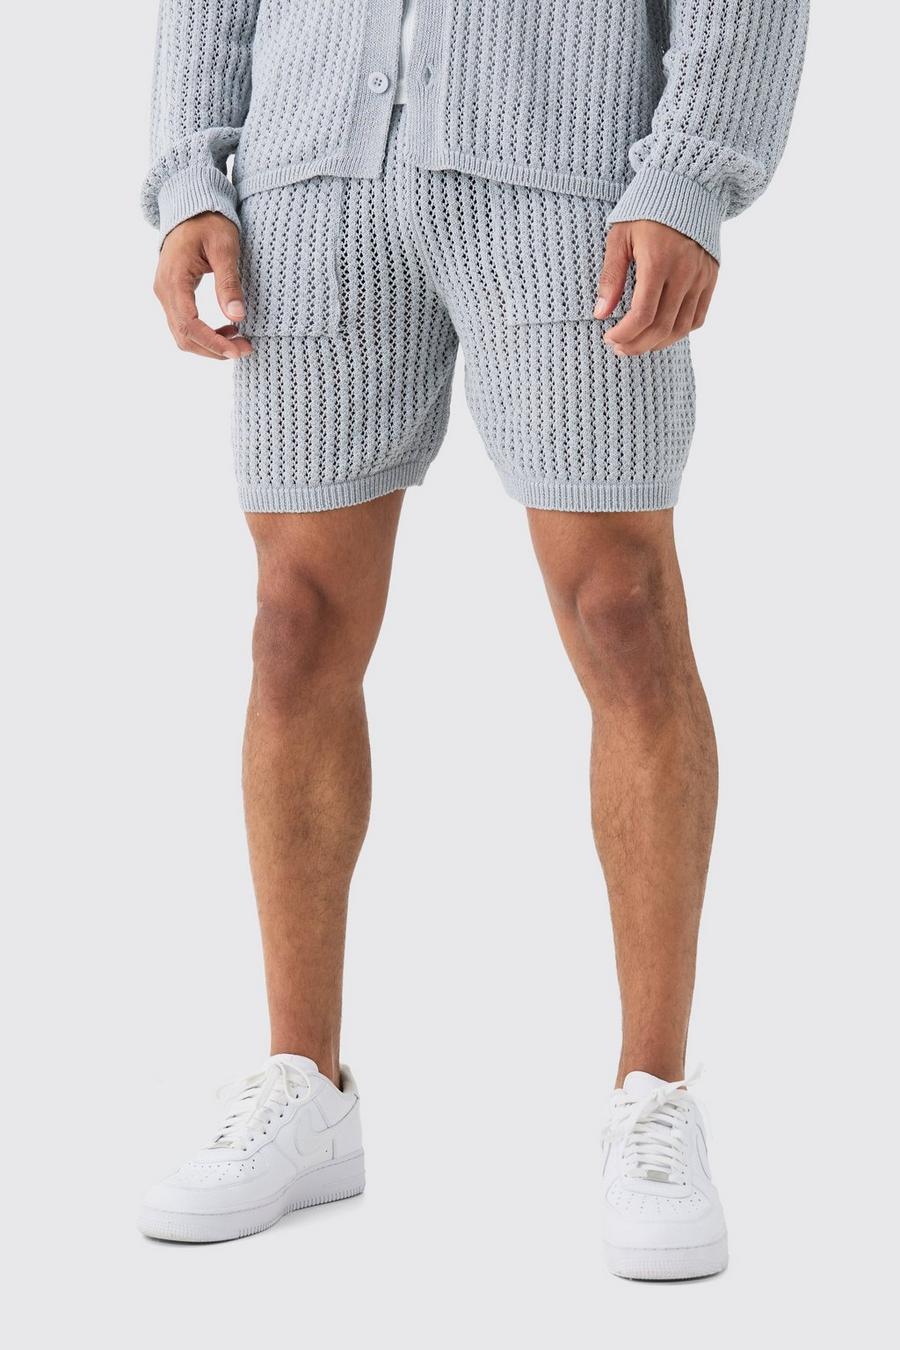 Crochet Open Knit Mid Length Shorts In Grey